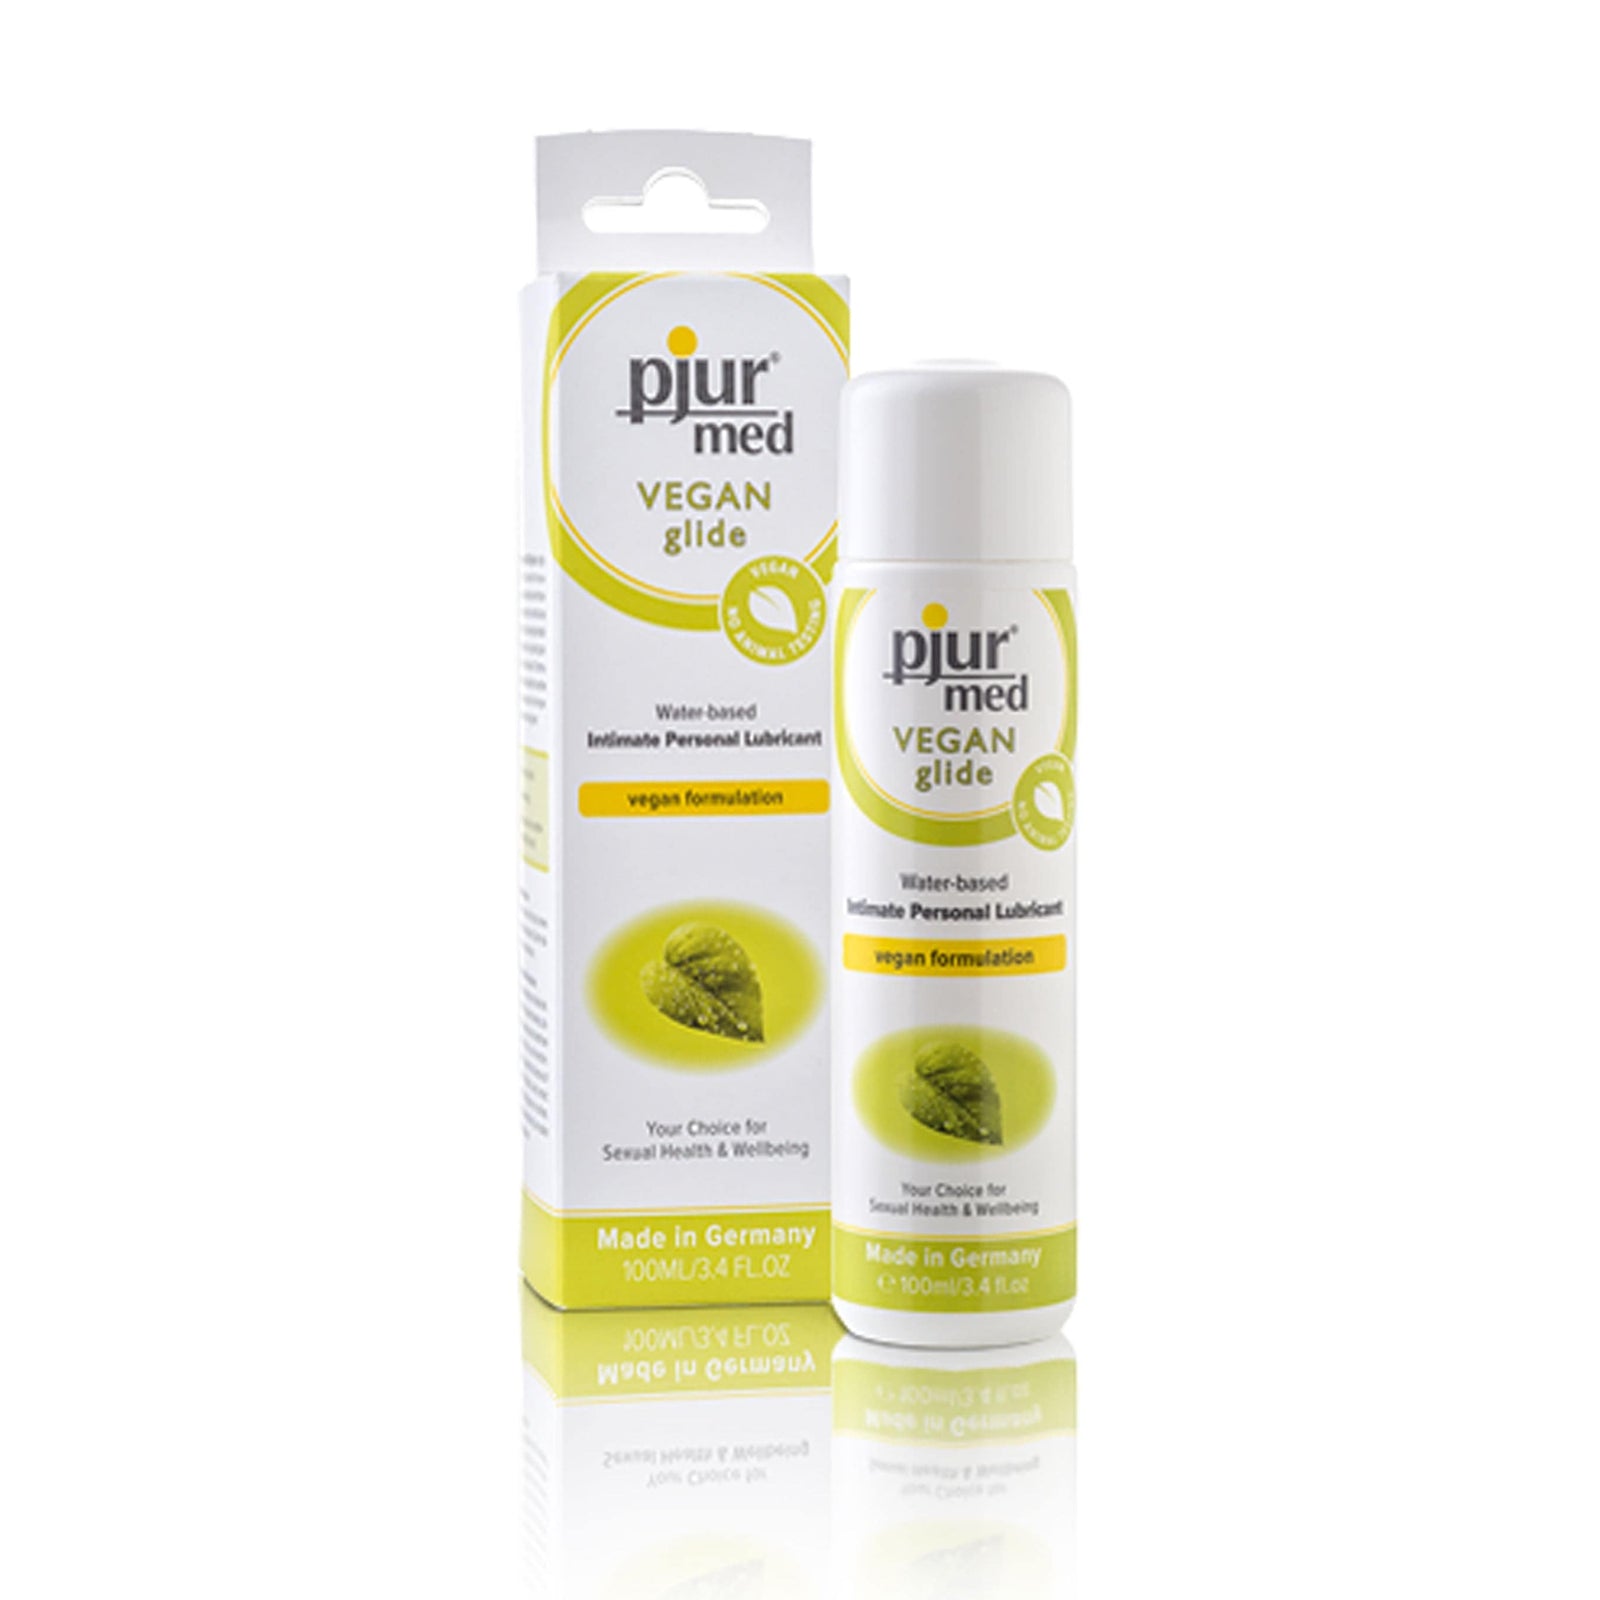 Pjur - Med Vegan Glide Water Based Intimate Personal Lubricant 100ml Lube (Water Based) 827160111373 CherryAffairs